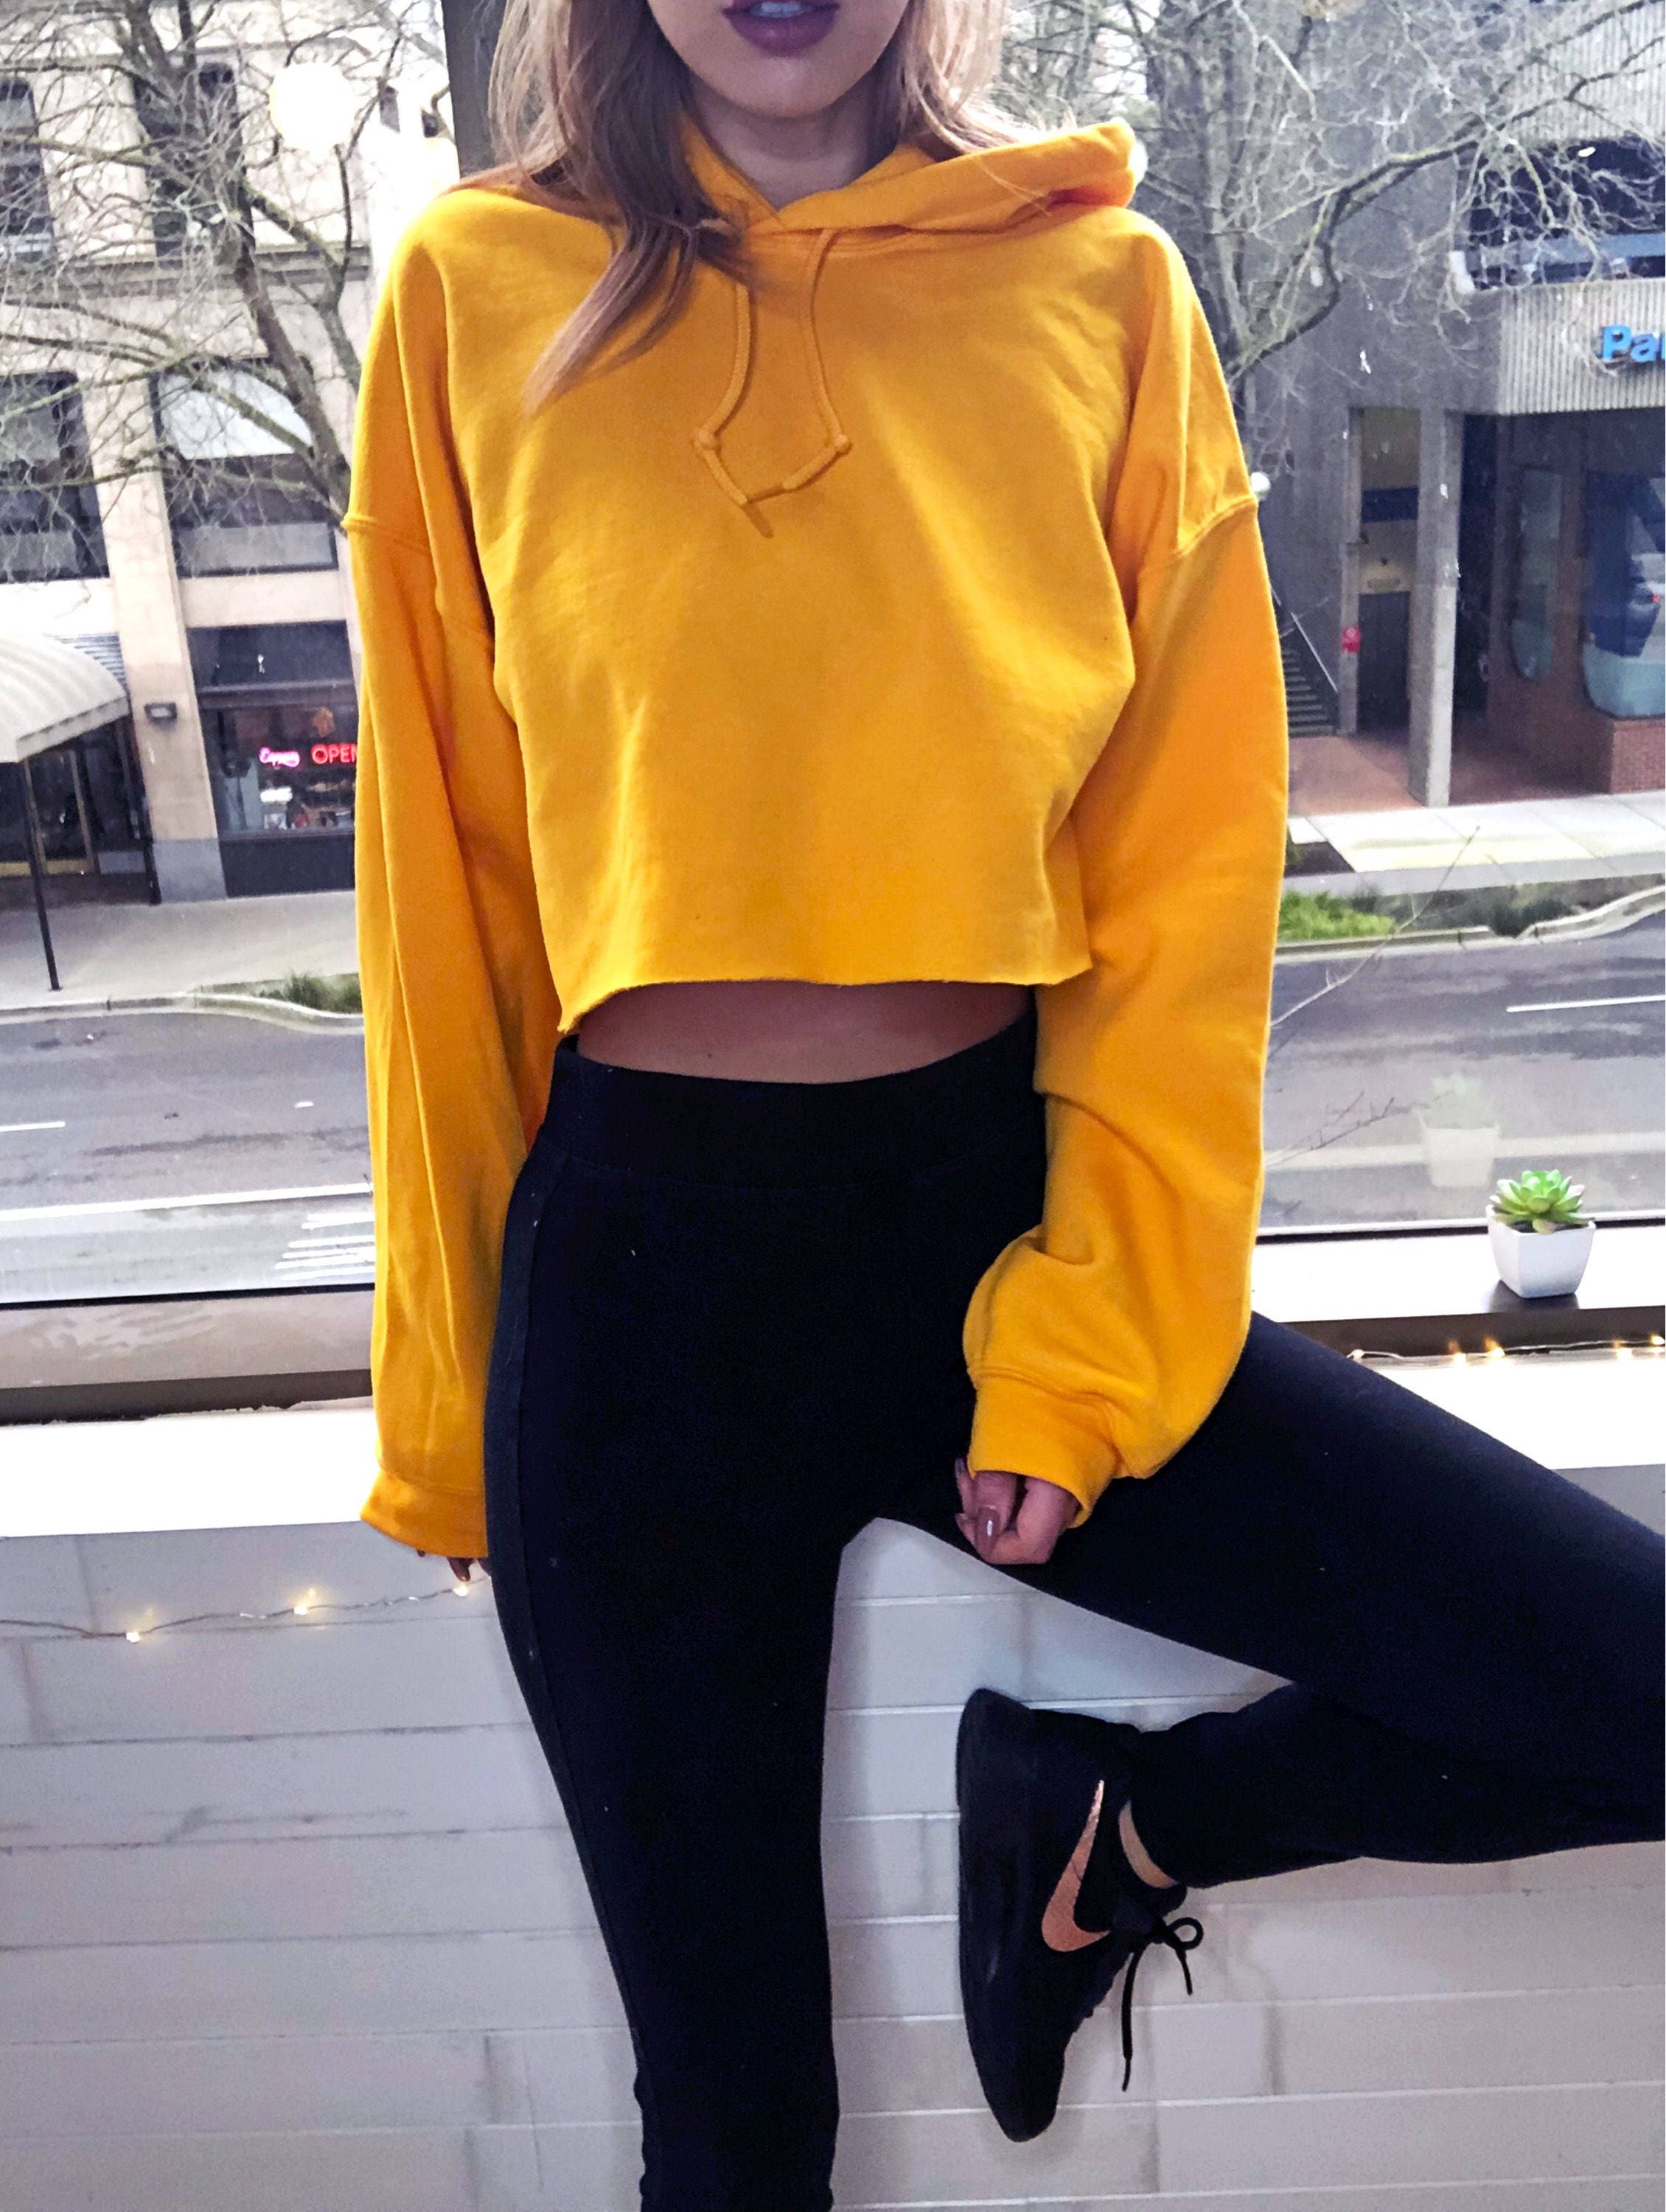 Cropped Hoodie Yellow Sweatshirt Women's Crop Top Hooded | Etsy